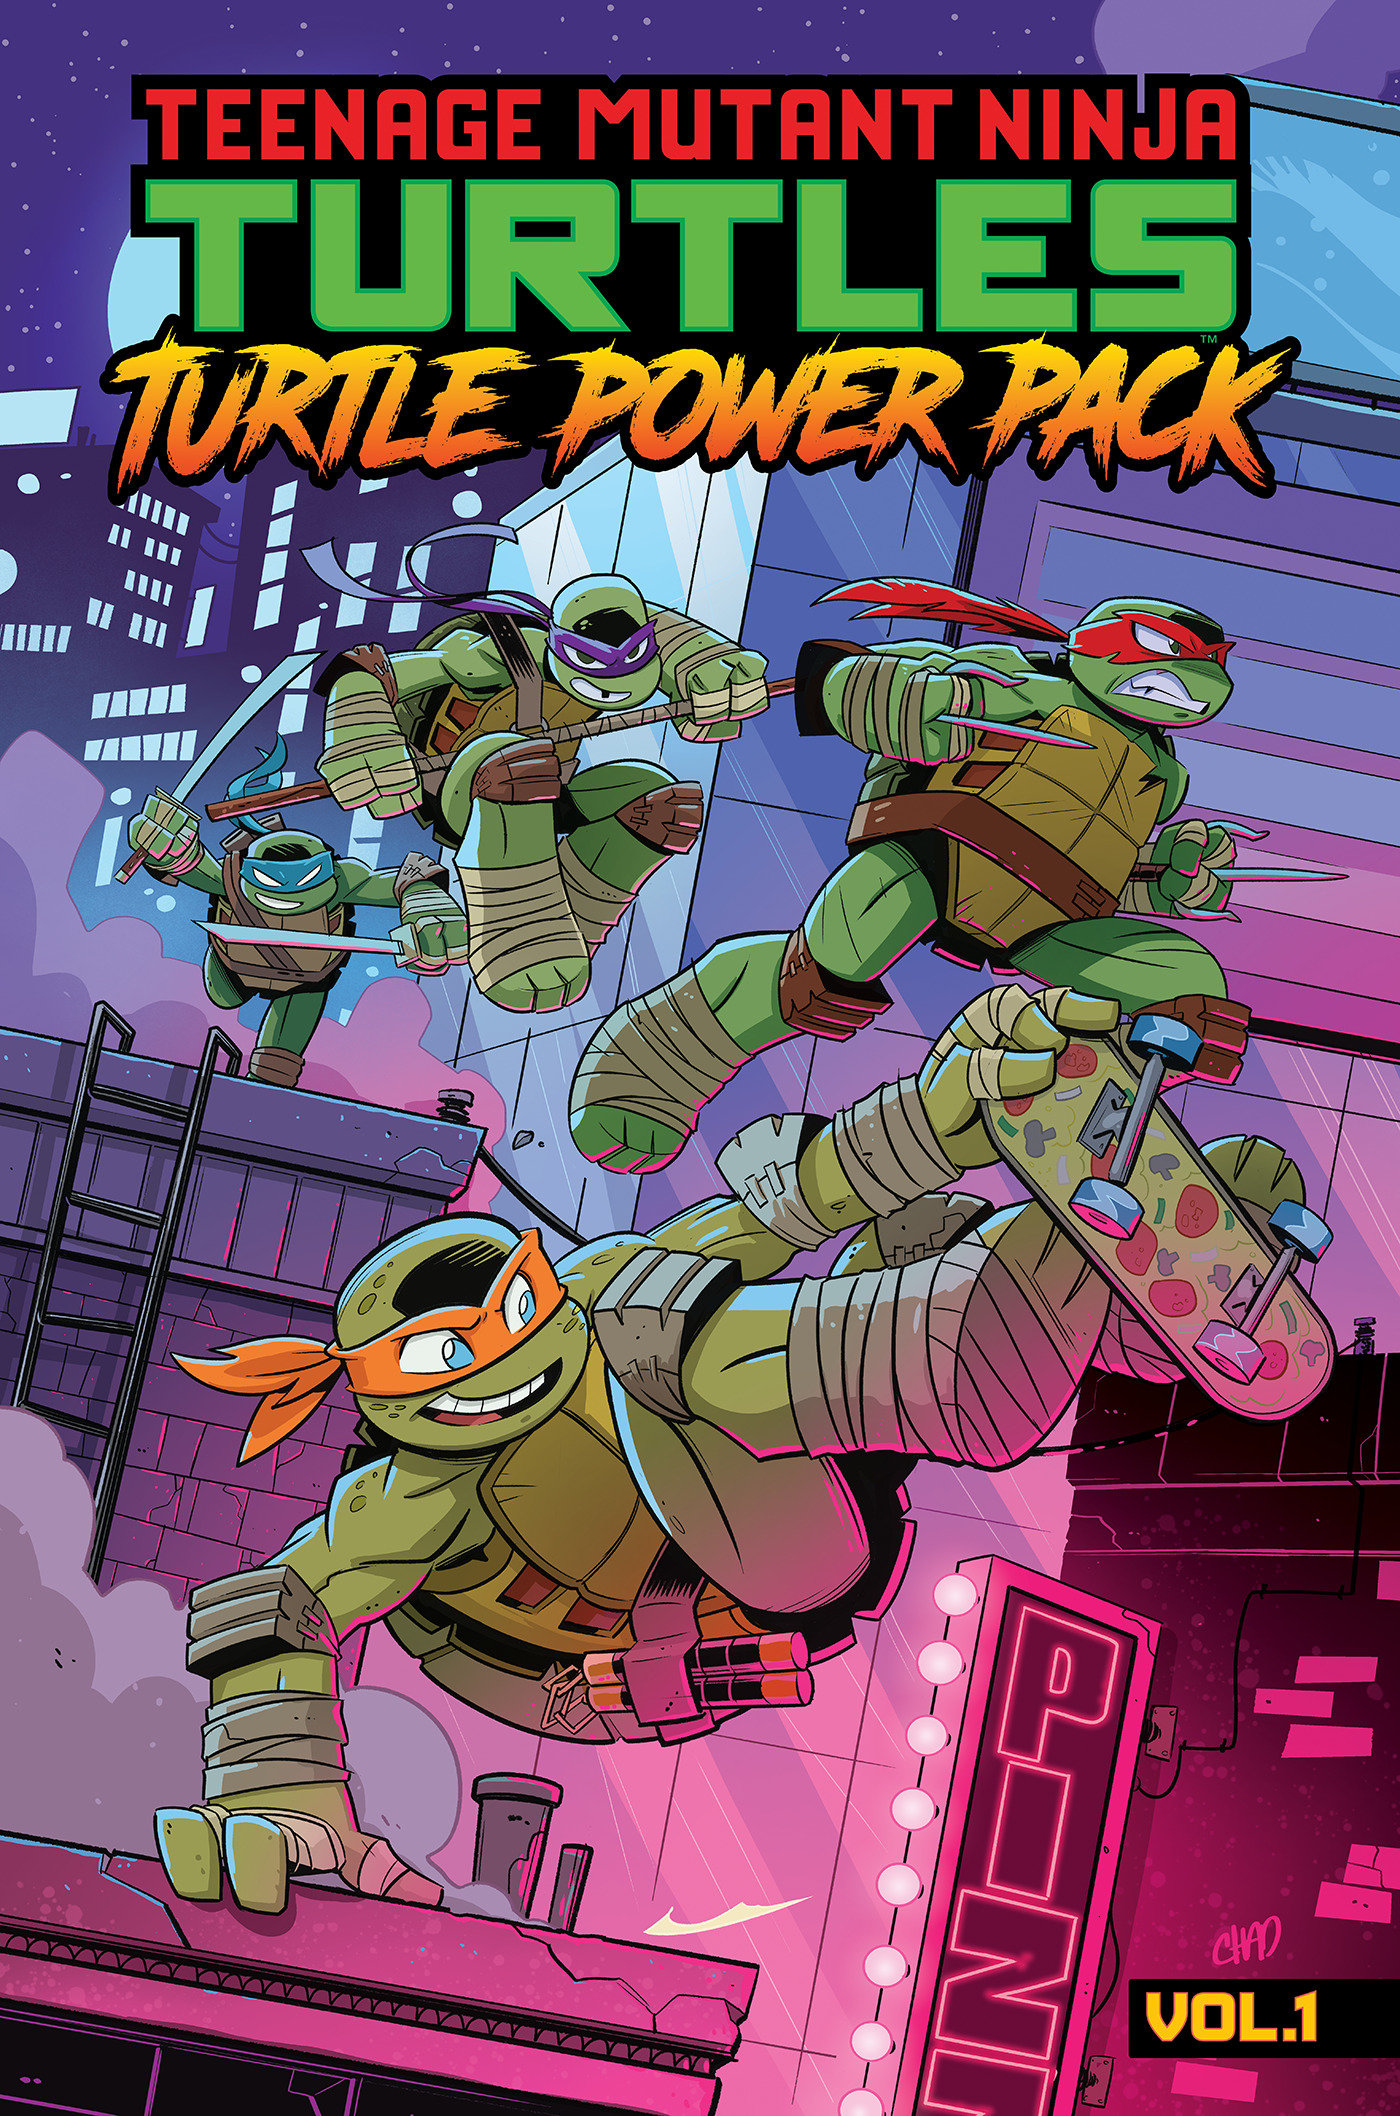 Teenage Mutant Ninja Turtles: Turtle Power Pack Graphic Novel Volume 1